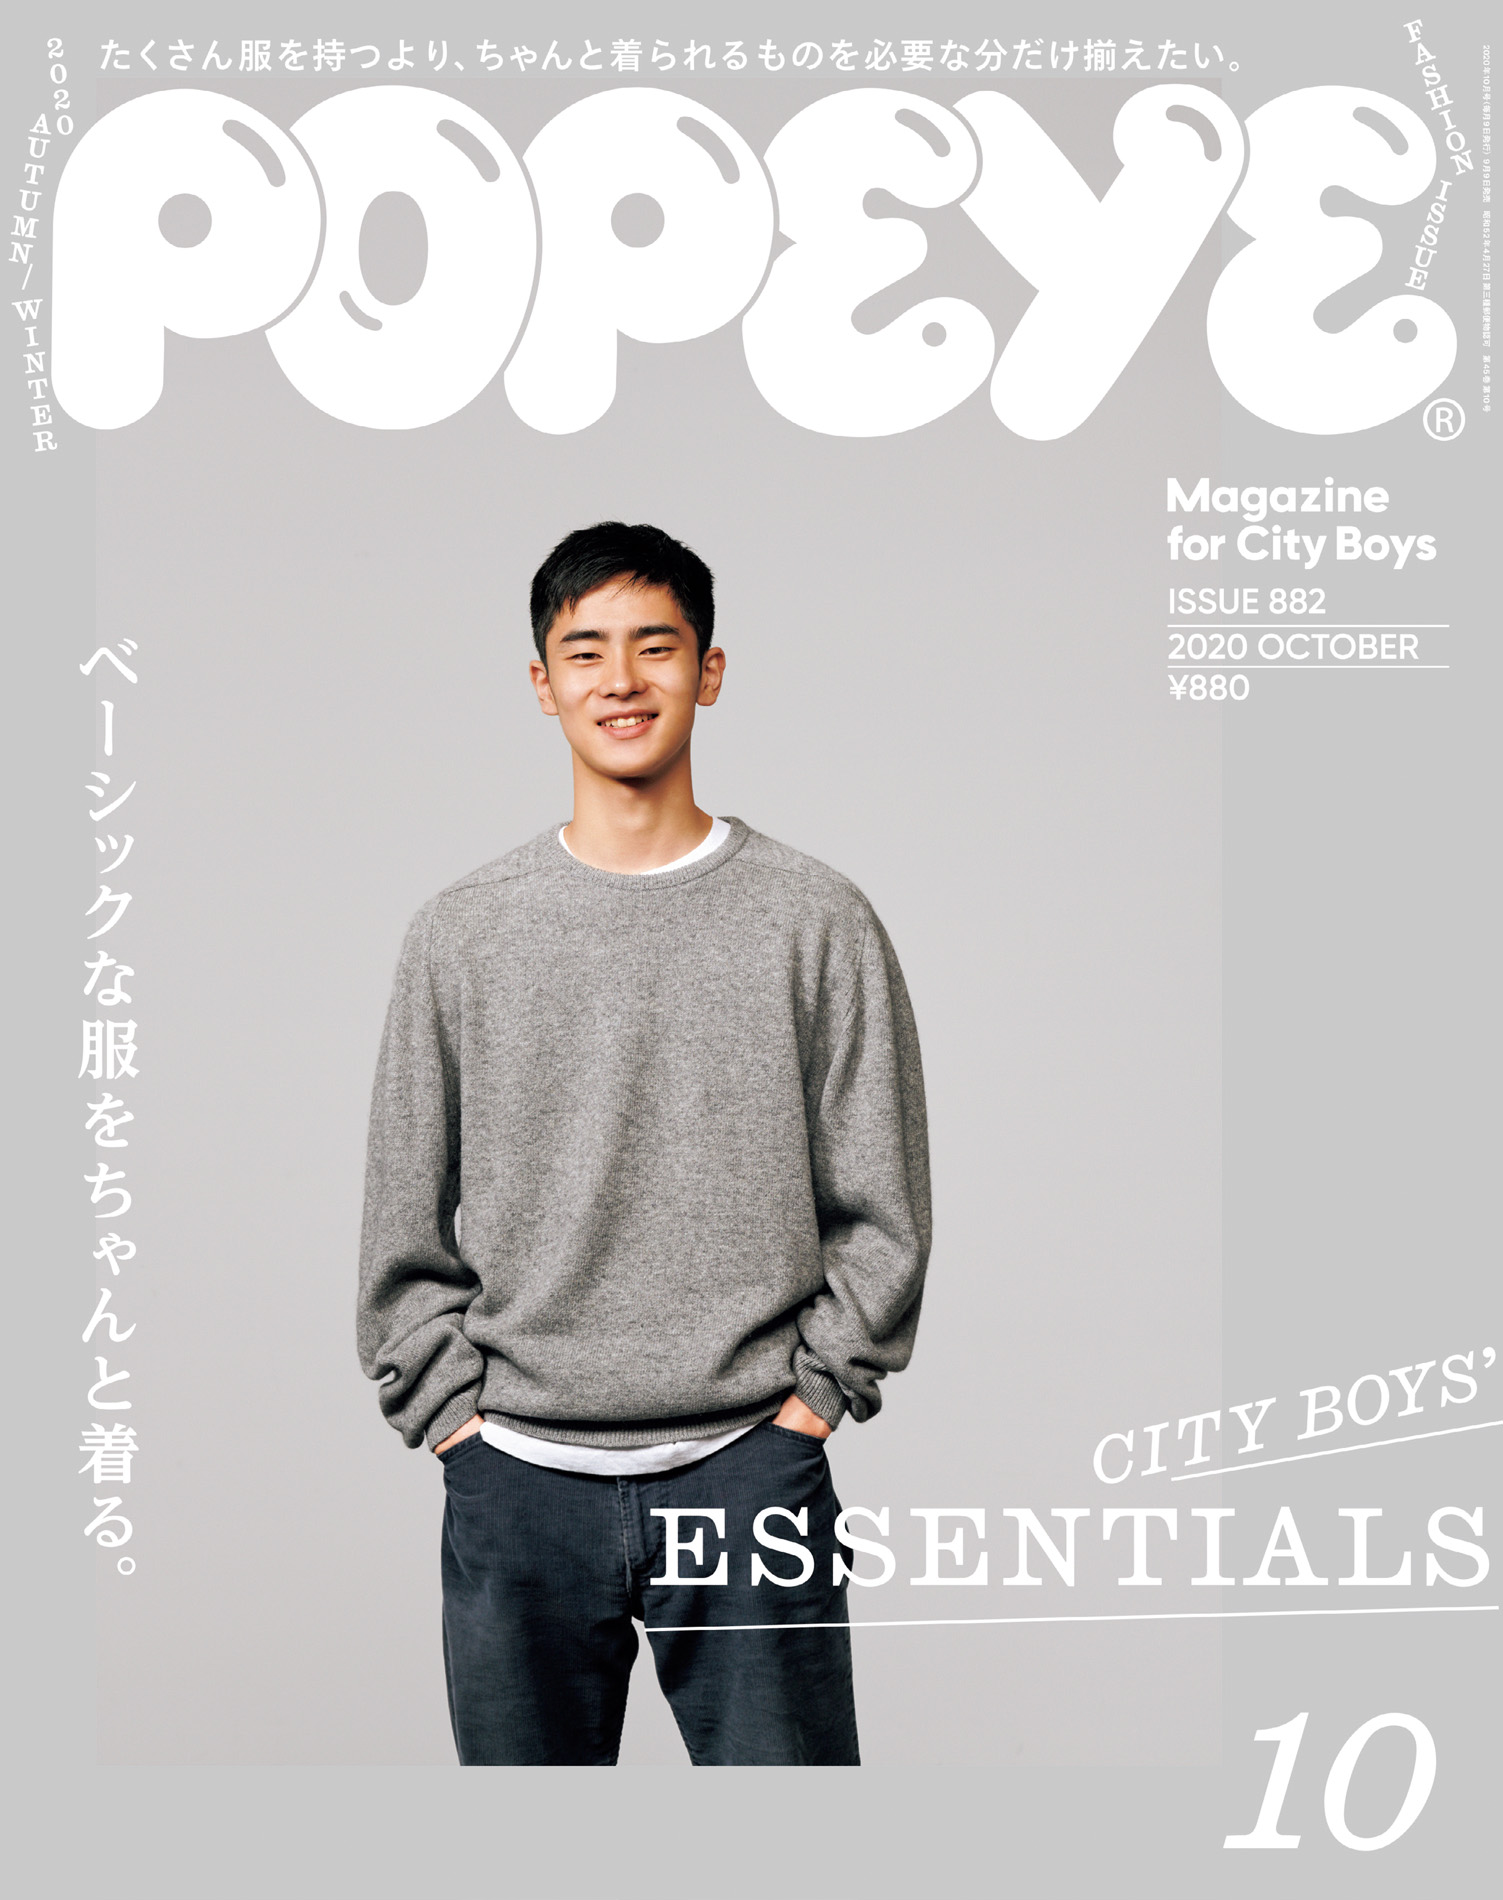 POPEYE(ポパイ) 2020年 10月号 [CITY BOY'S ESSENTIALS] - ポパイ編集